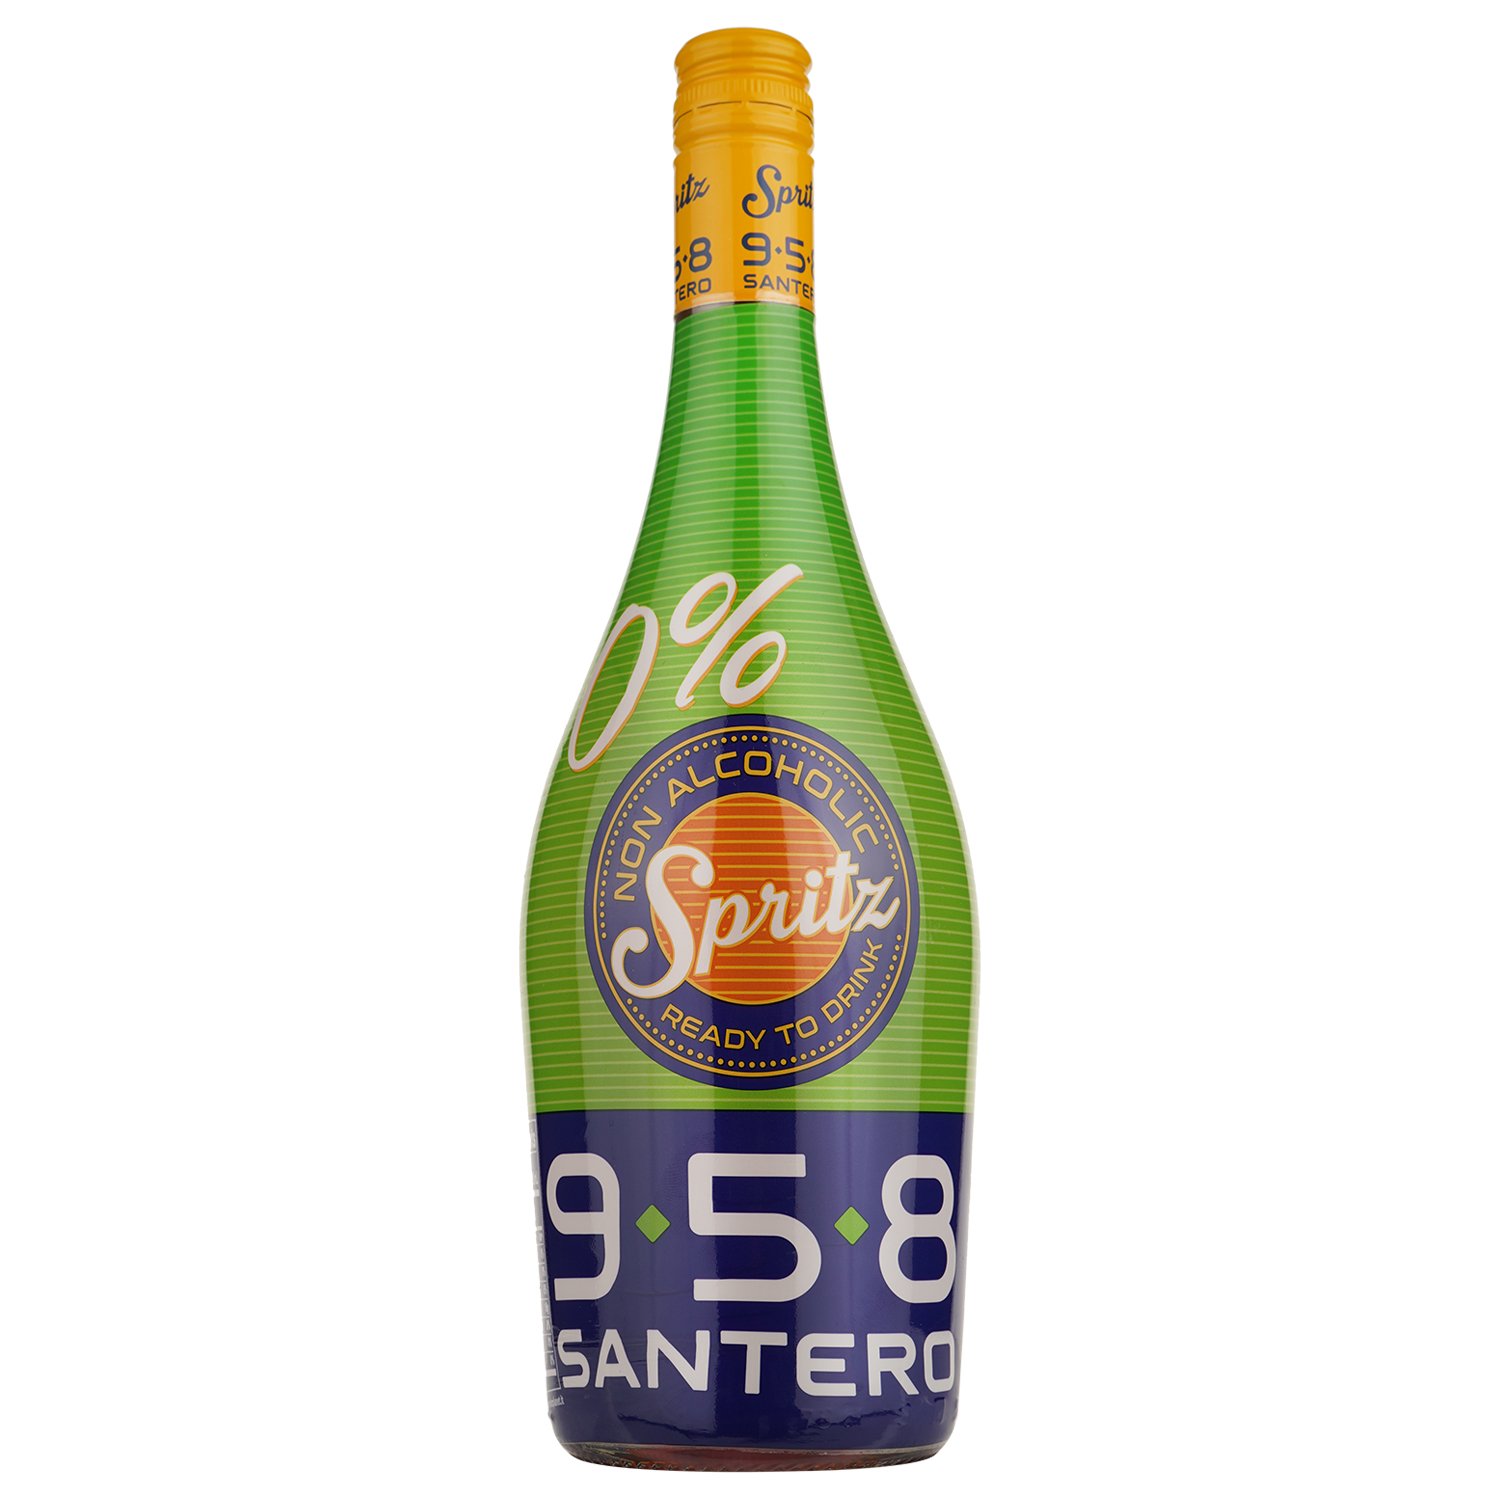 Винний напій Santero Spritz Ready To Drink 958, 0,75 л - фото 1